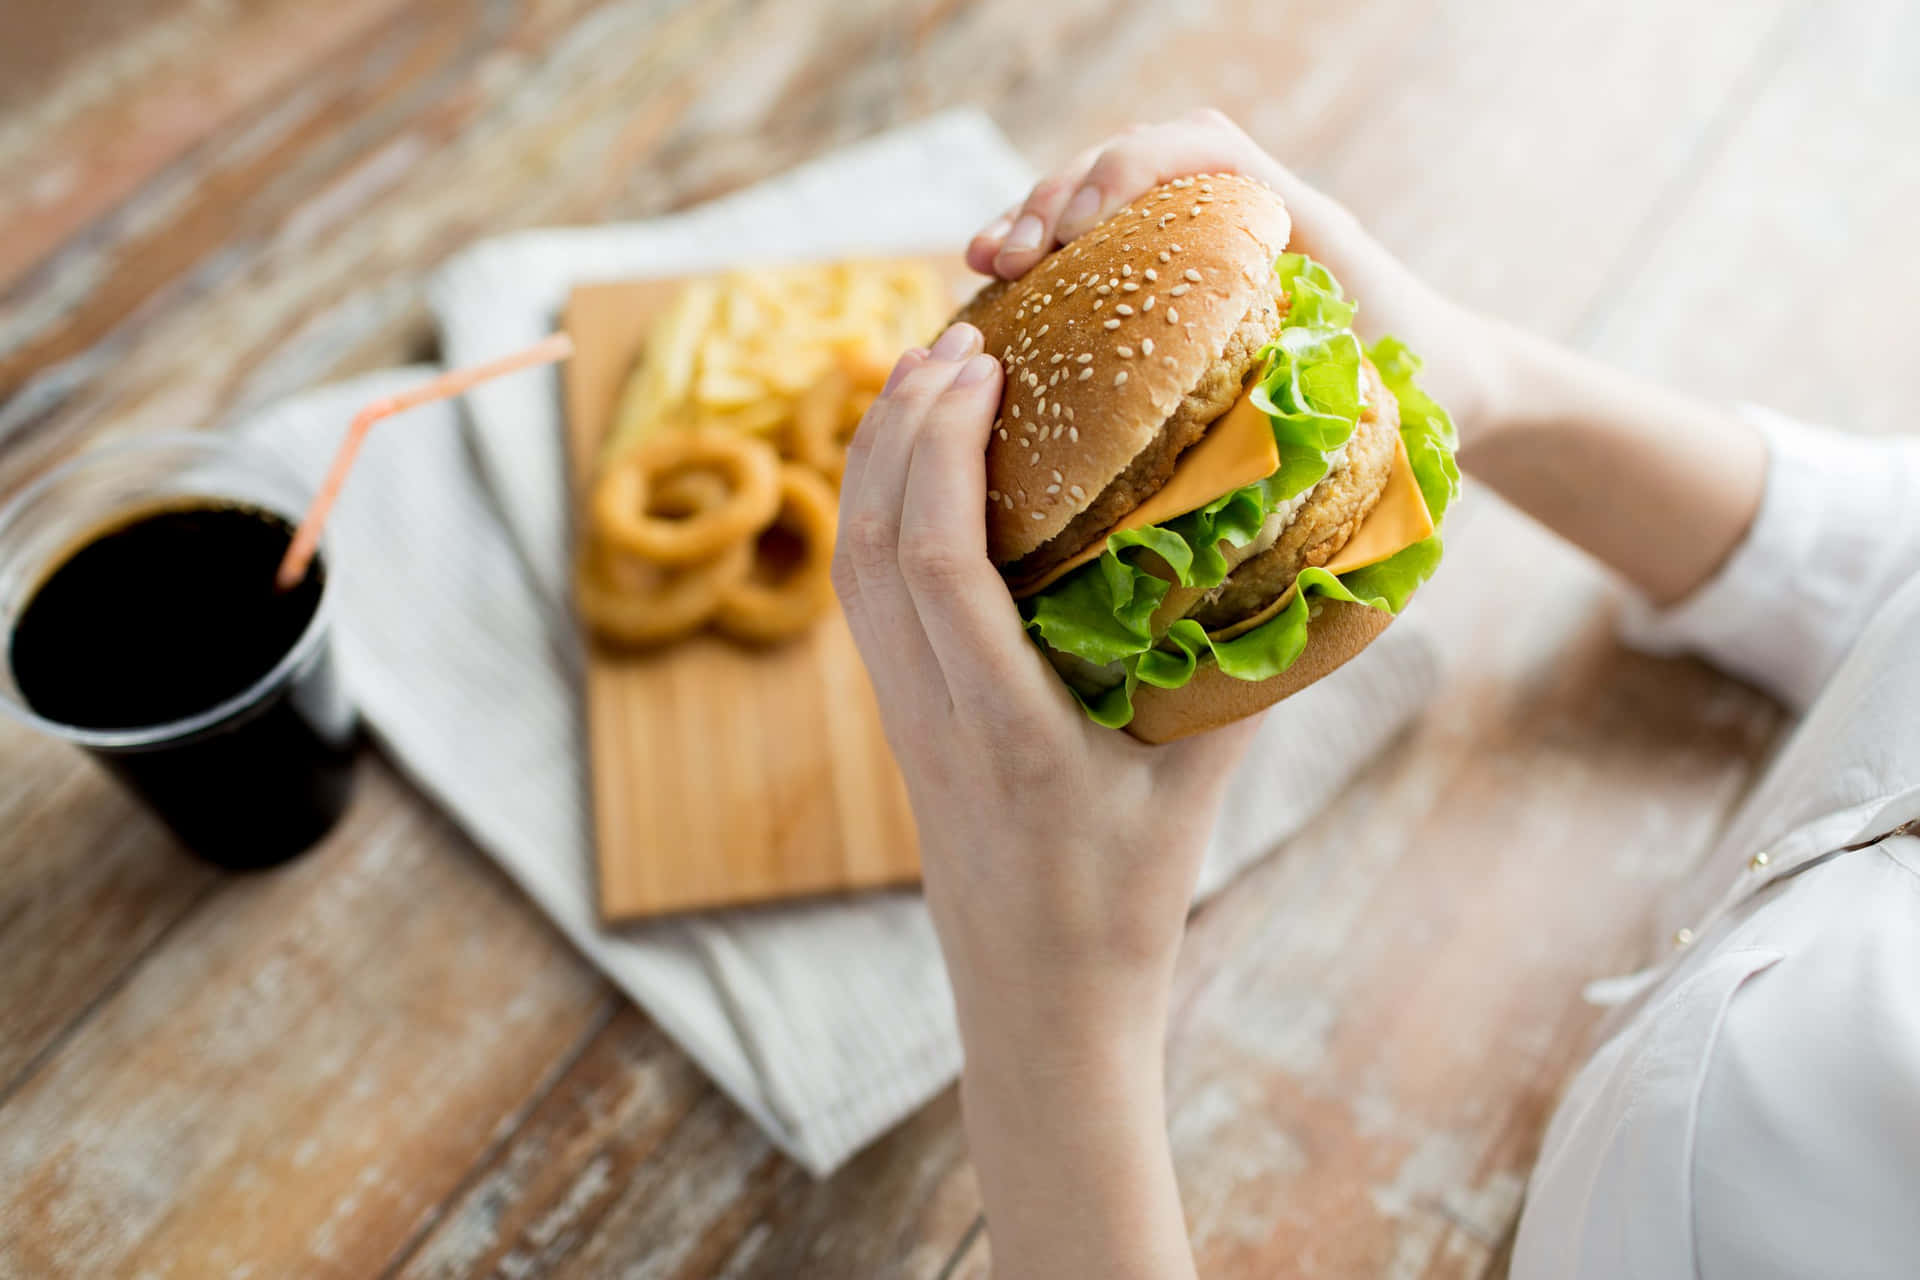 Ilcibo Fast Food Può Essere Delizioso E Comodo, Ma Scegli Saggiamente.